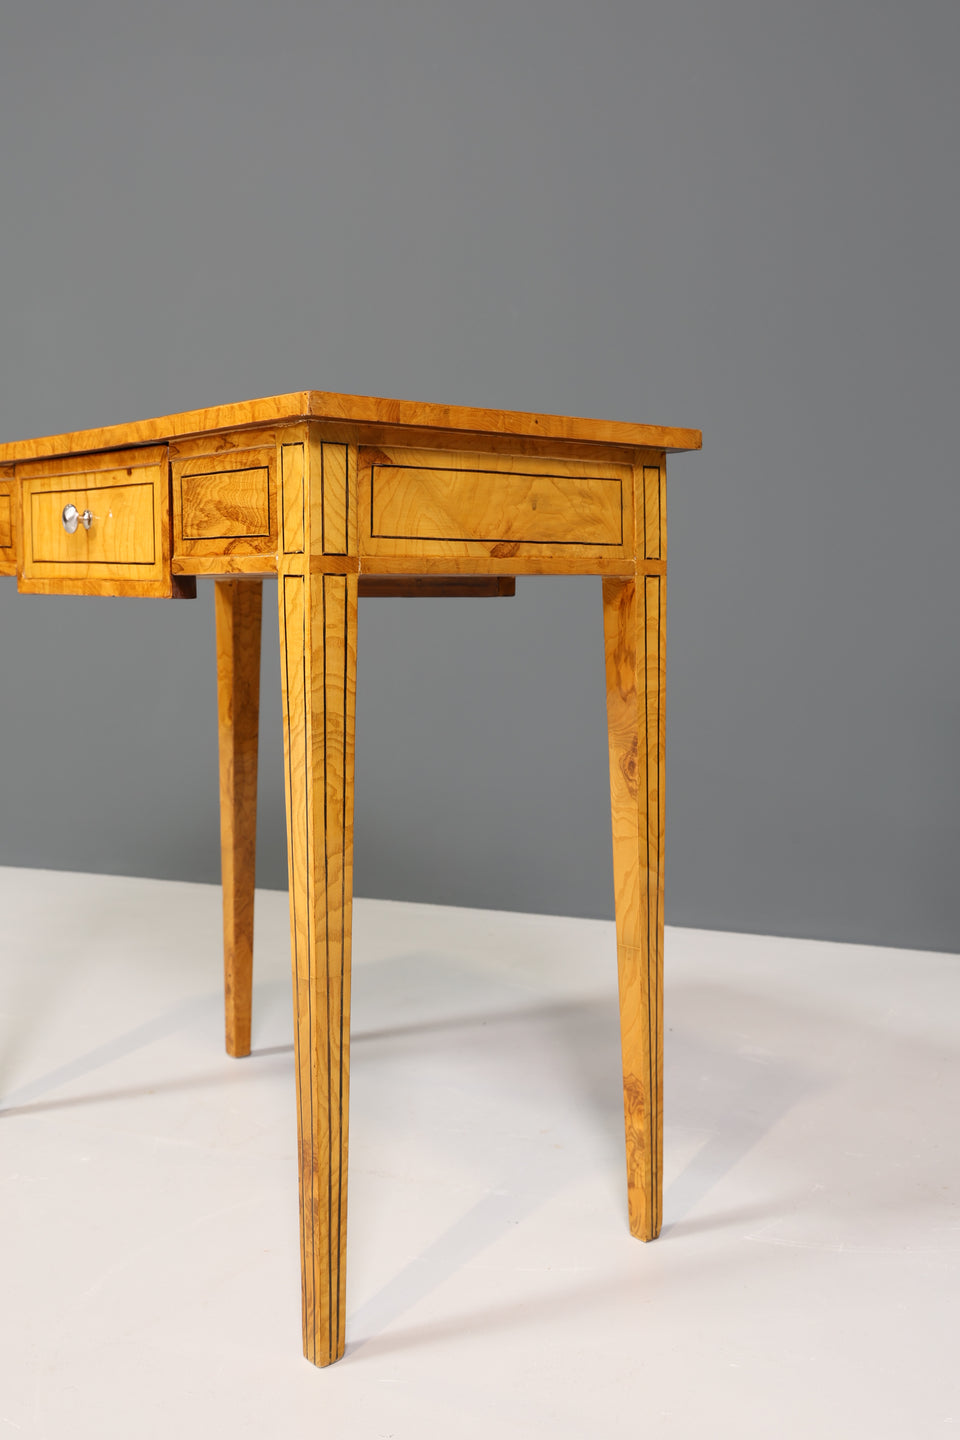 Wunderschöner Filigraner Schreibtisch French Desk Antik Stil